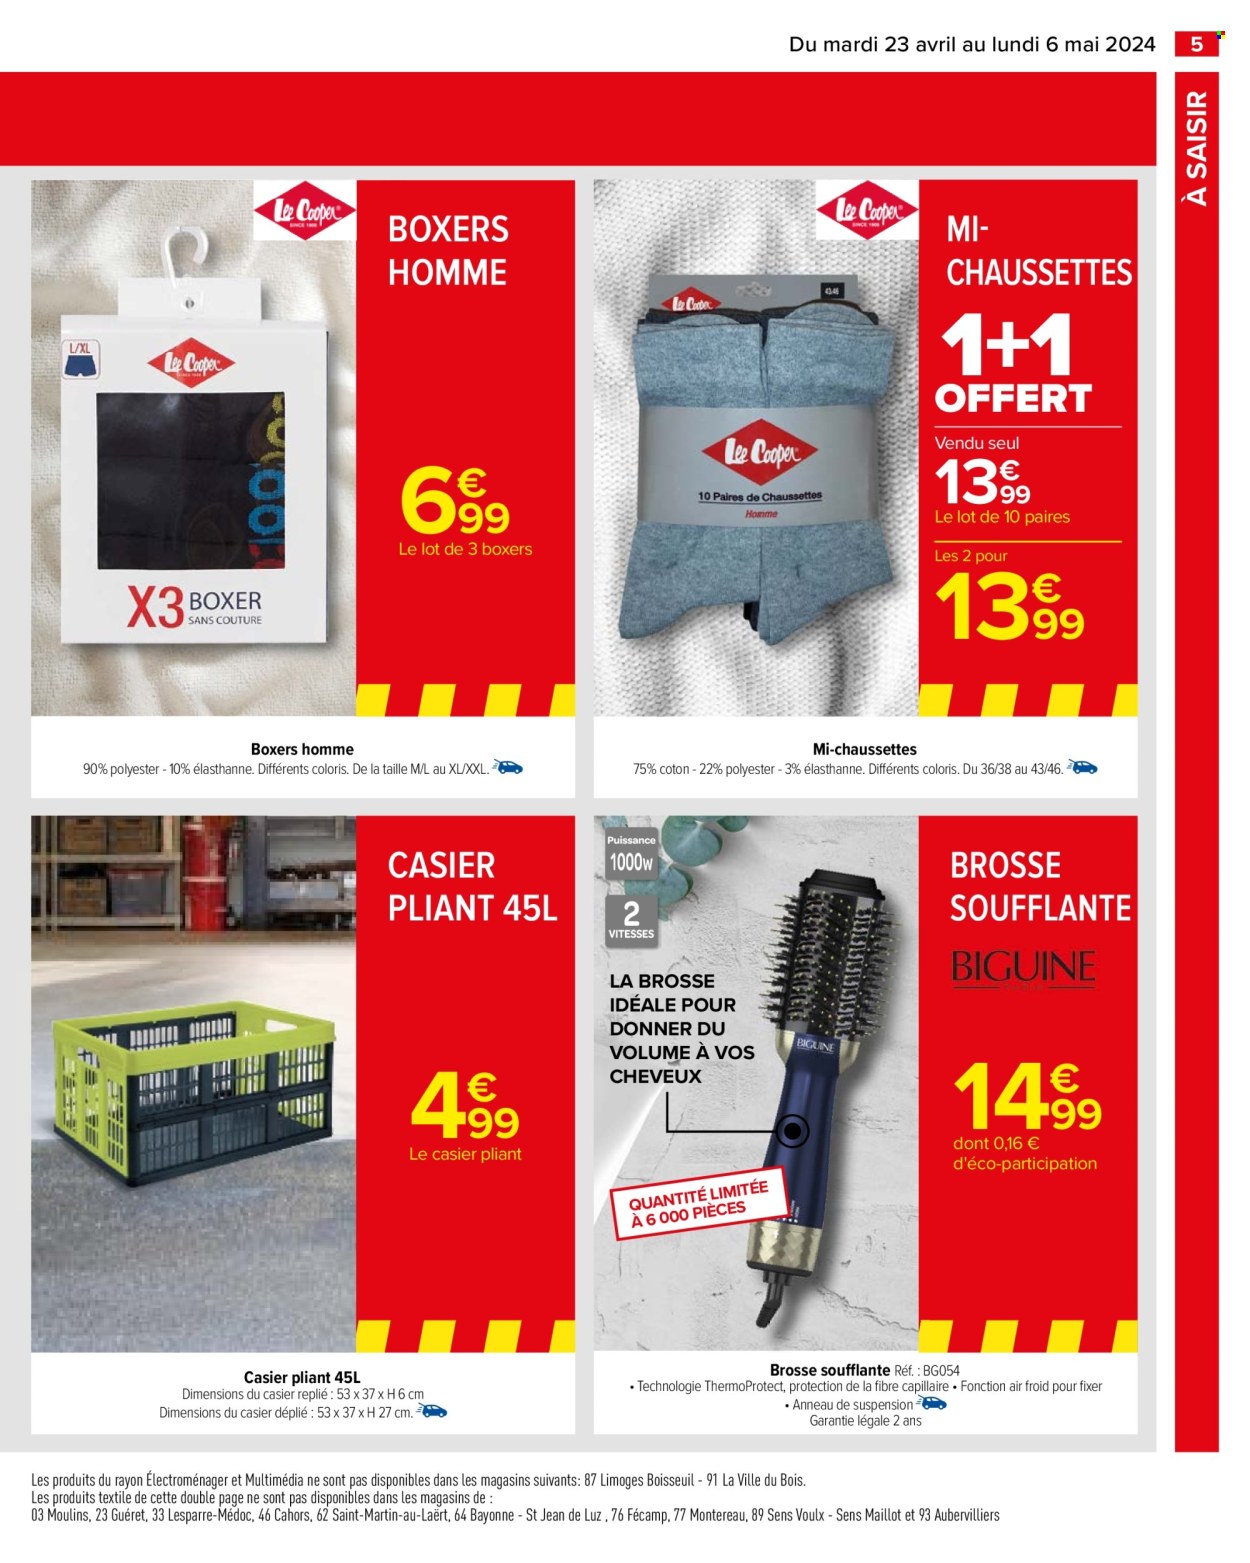 thumbnail - Catalogue Carrefour Hypermarchés - 23/04/2024 - 06/05/2024 - Produits soldés - boxers, chaussettes, brosse soufflante. Page 7.